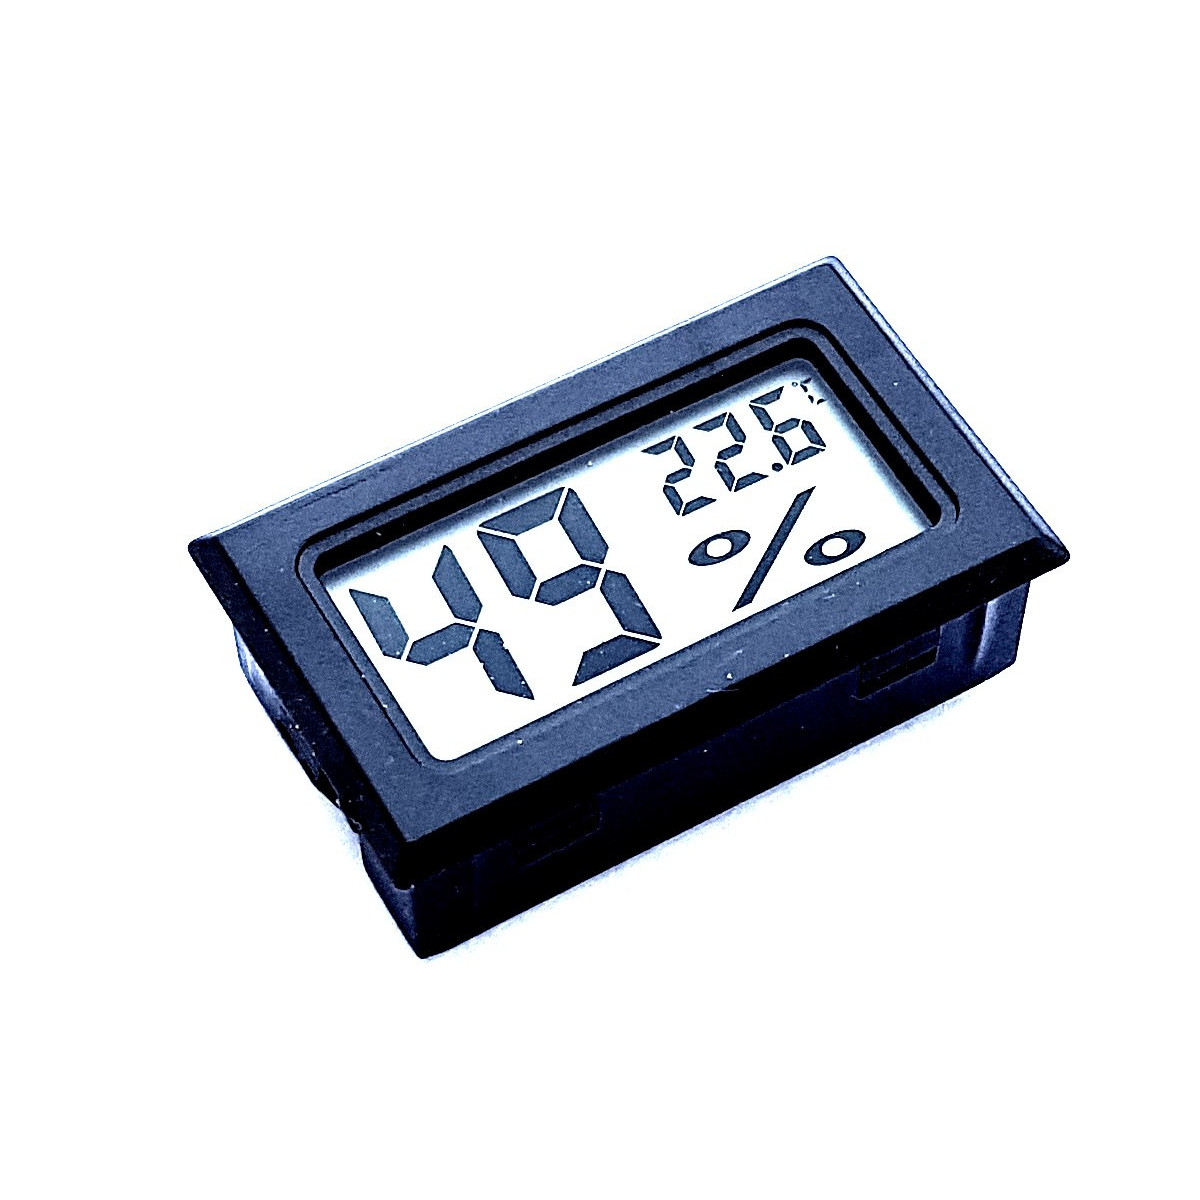 Generic - Thermo-hygromètre numérique thermomètre hygromètre température  ambiante intérieure jauge d'humidité compteur réveil affichage LCD 326 -  Hygromètres, thermomètres - Rue du Commerce